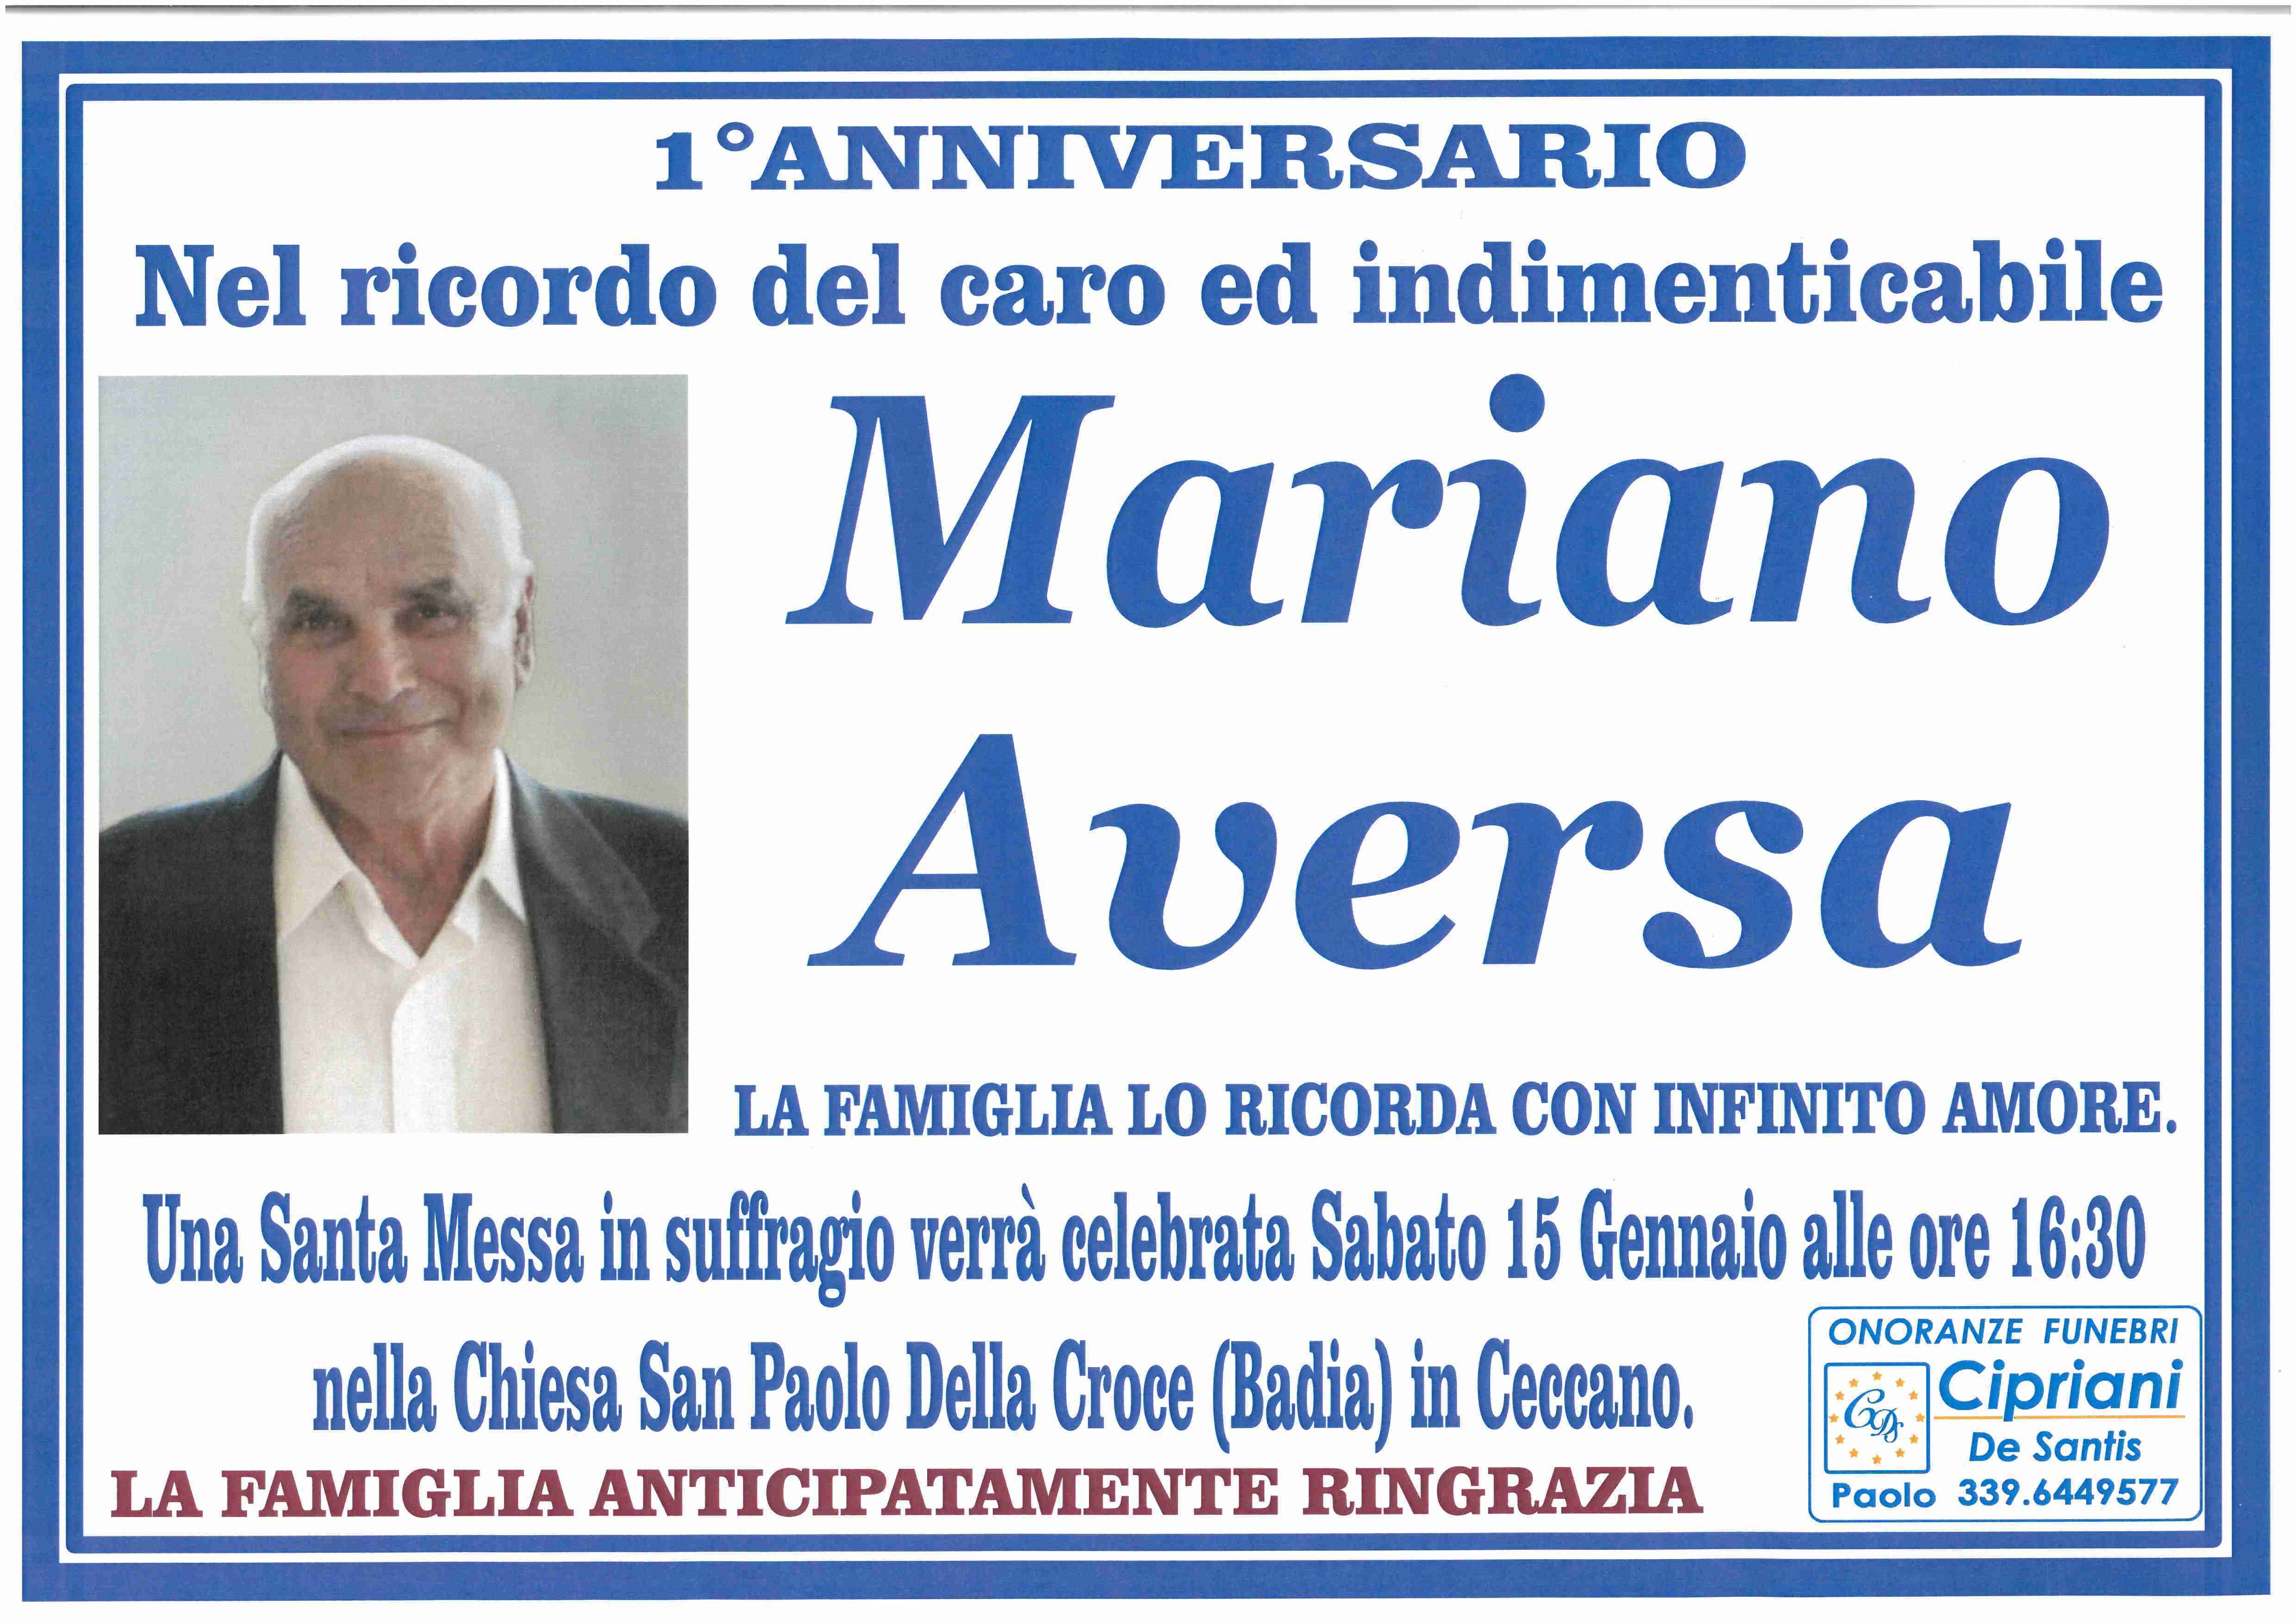 Mariano Aversa